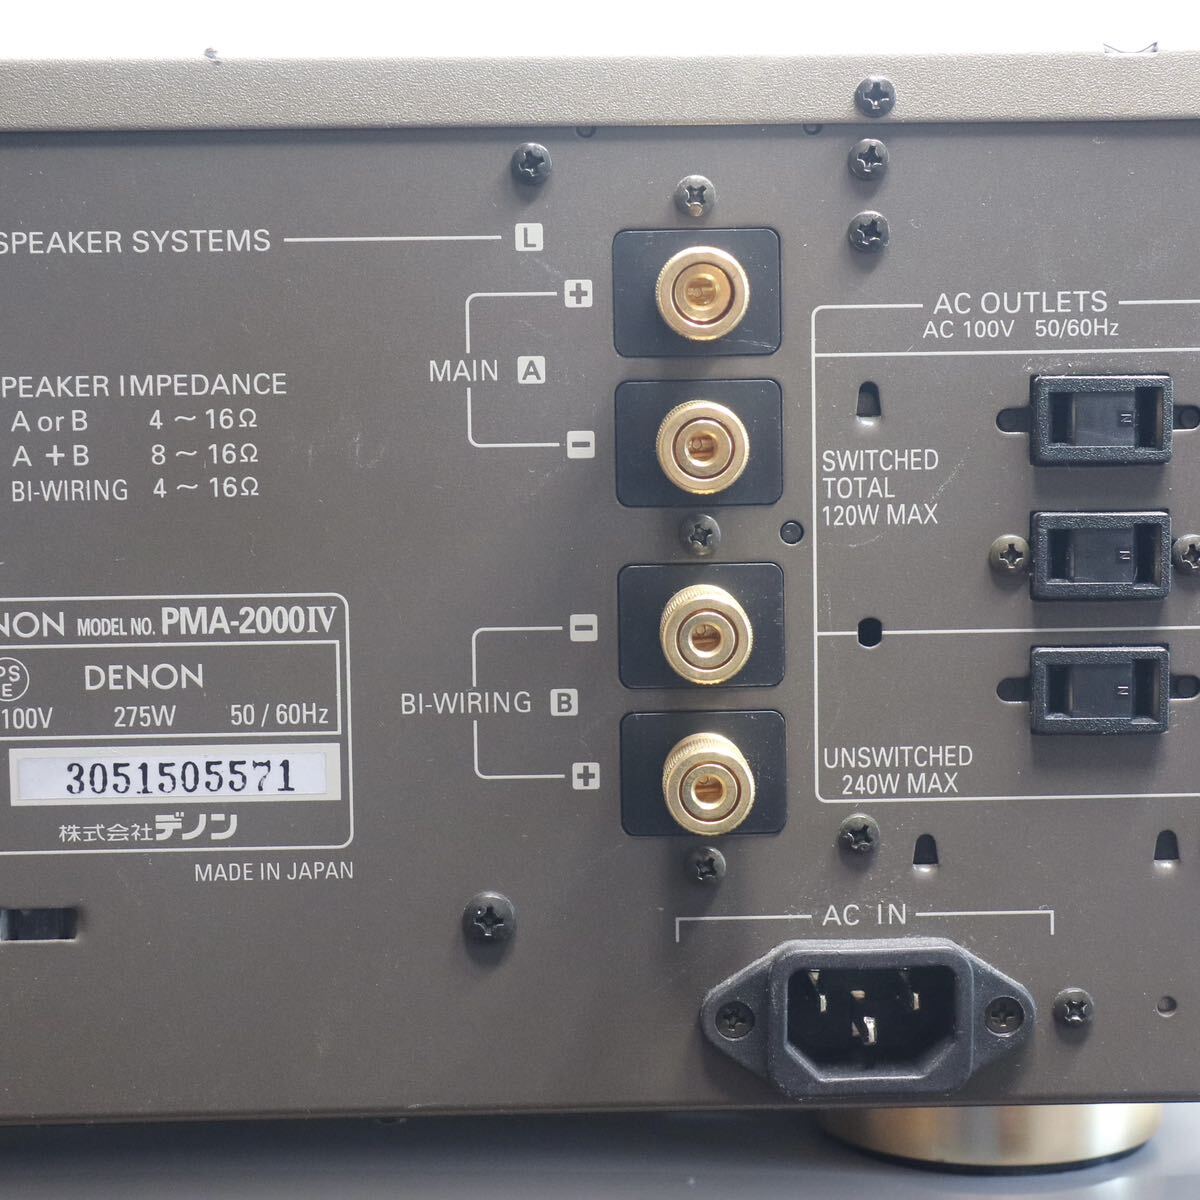 17) DENON pre-main amplifier PMA-2000IV electrification has confirmed 